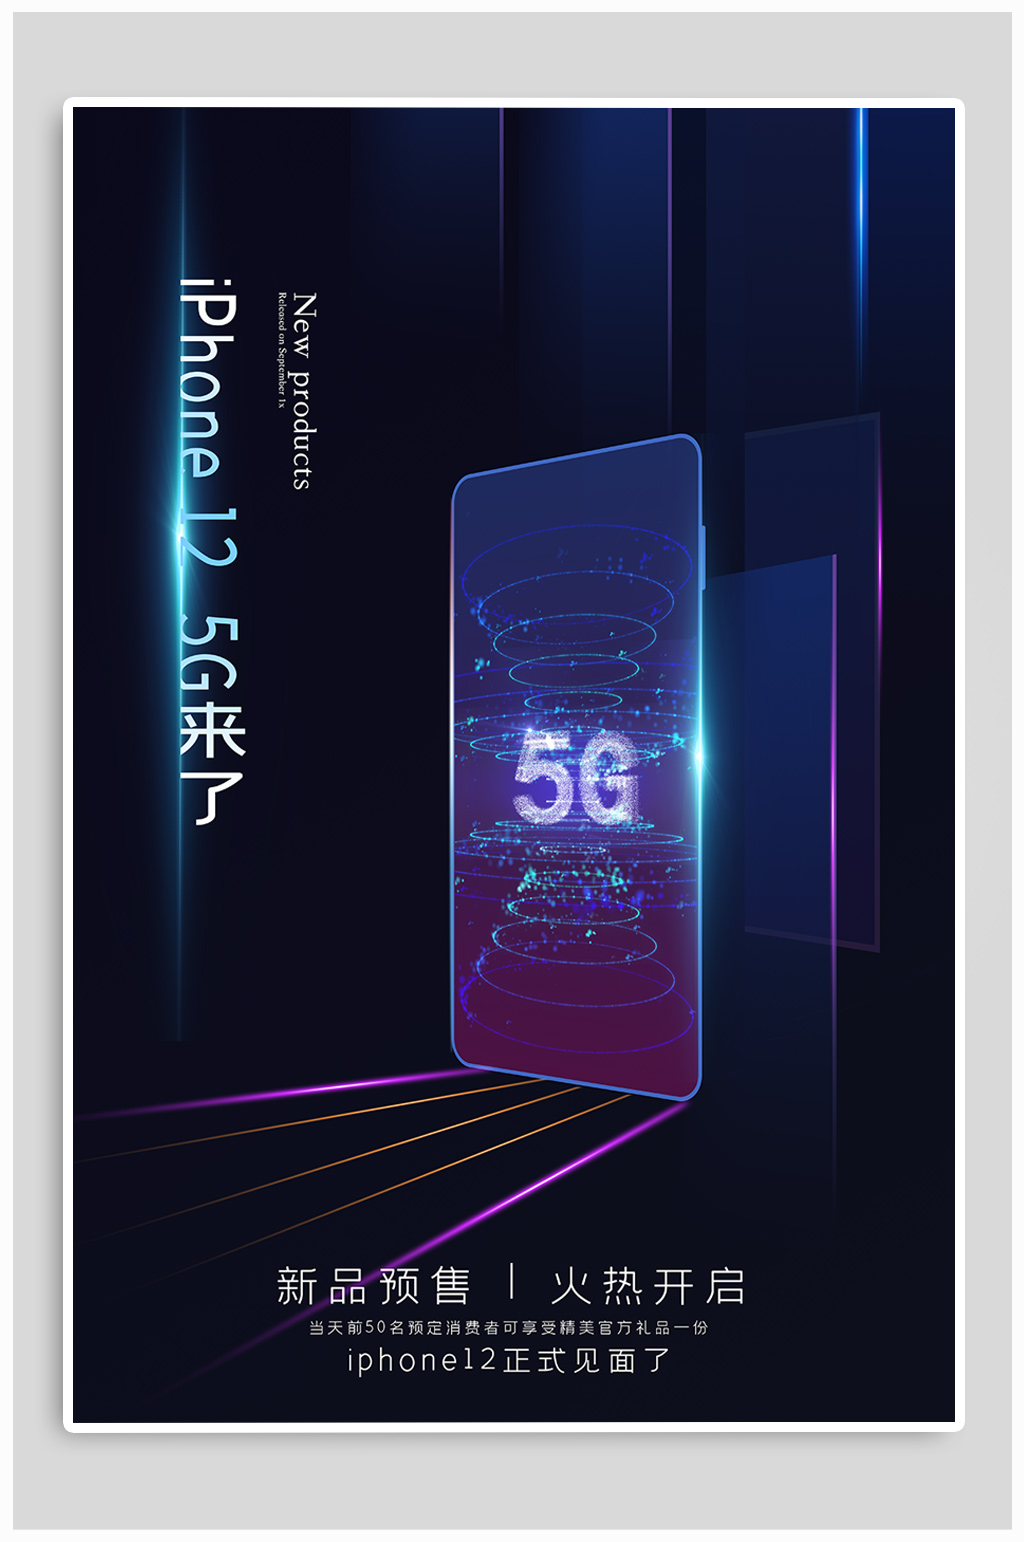 iphone12新品发布宣传海报